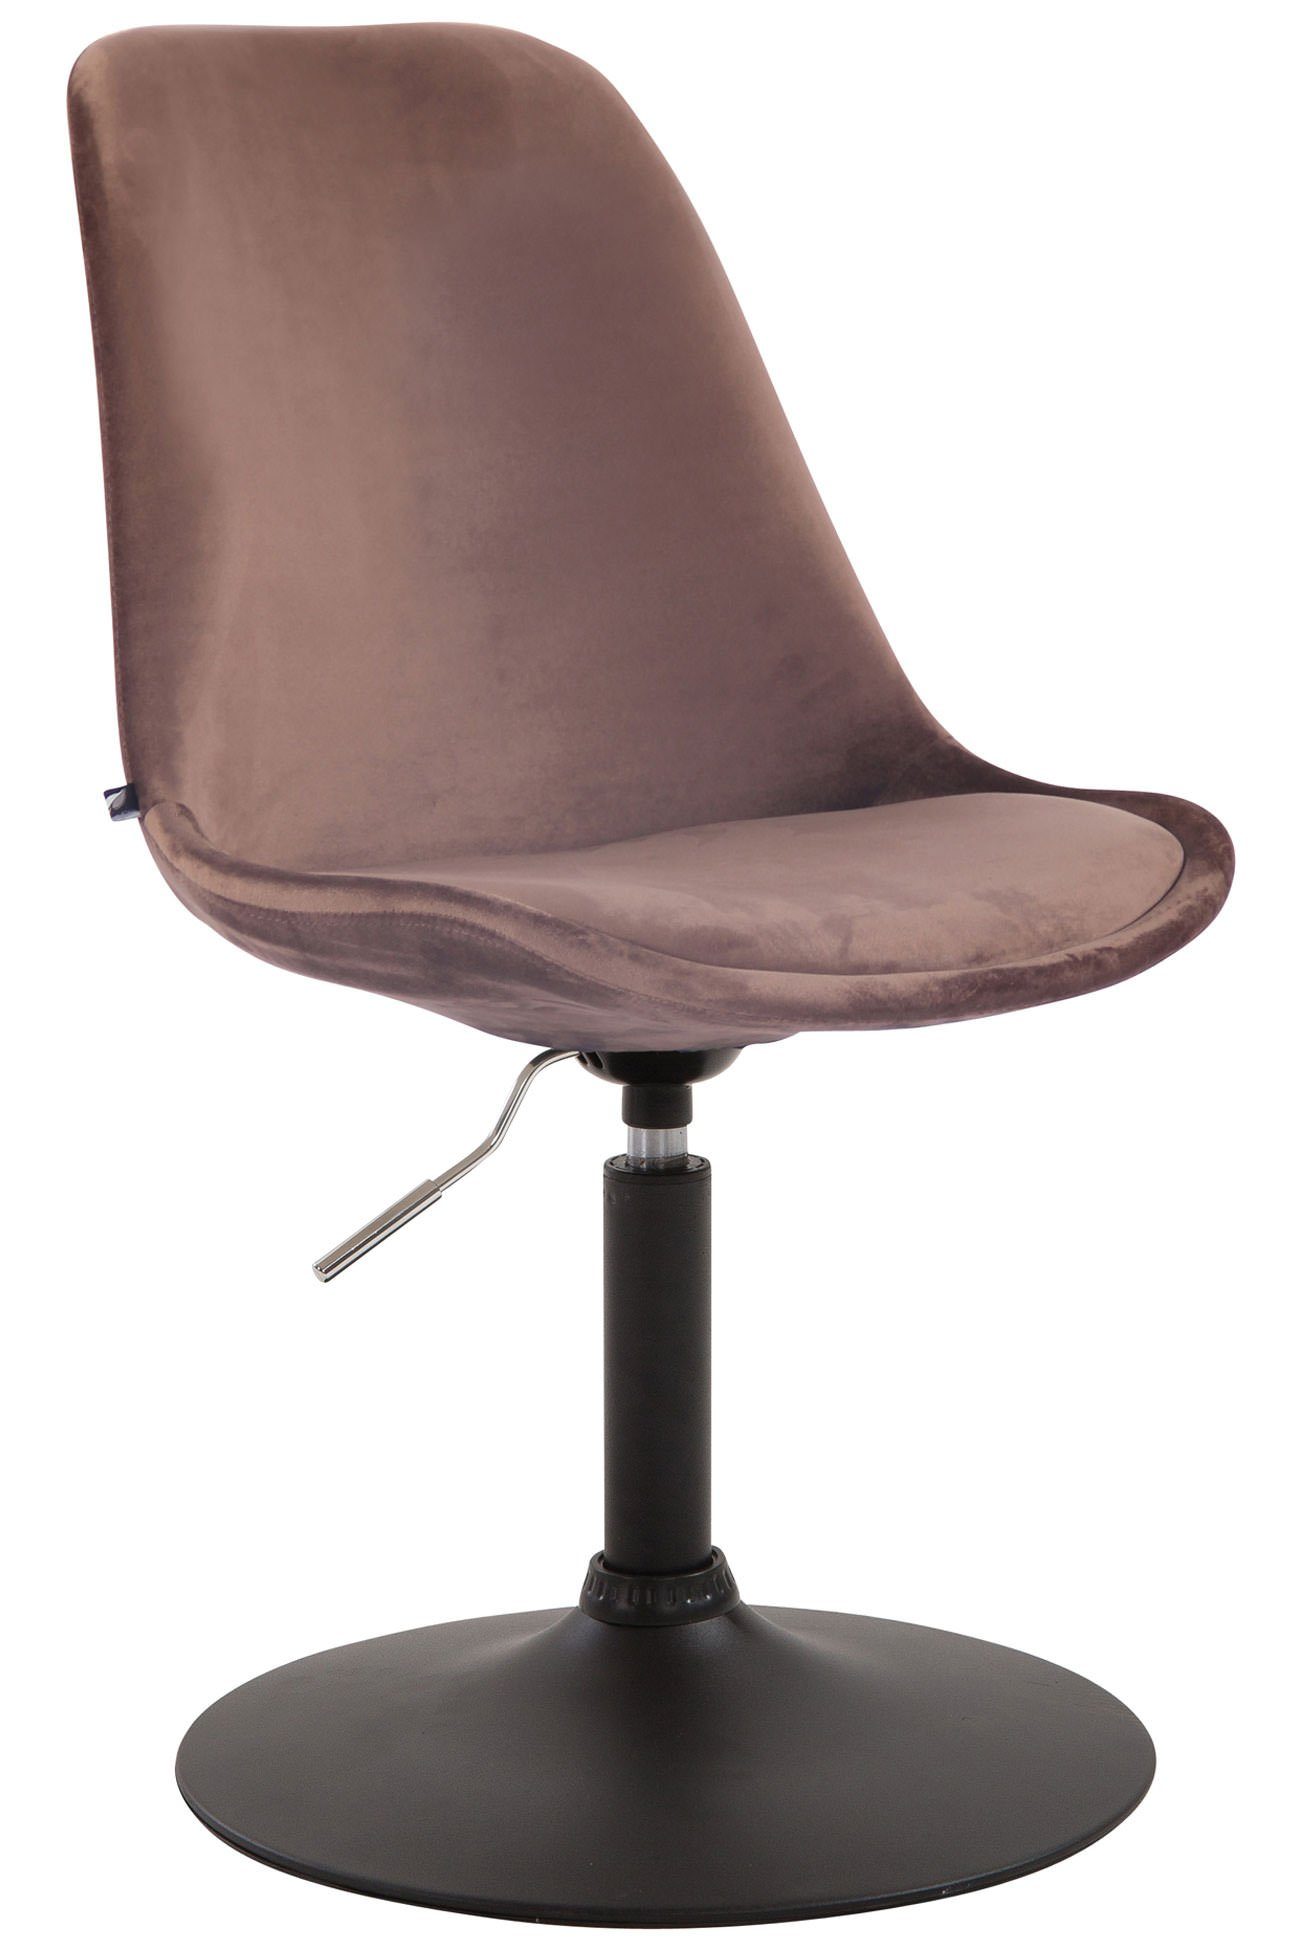 TPFLiving Esszimmerstuhl Mavic mit hochwertig gepolsterter Sitzfläche - Konferenzstuhl (Küchenstuhl - Esstischstuhl - Wohnzimmerstuhl - Polsterstuhl), Gestell: Metall schwarz - Sitzfläche: Samt braun | Stühle